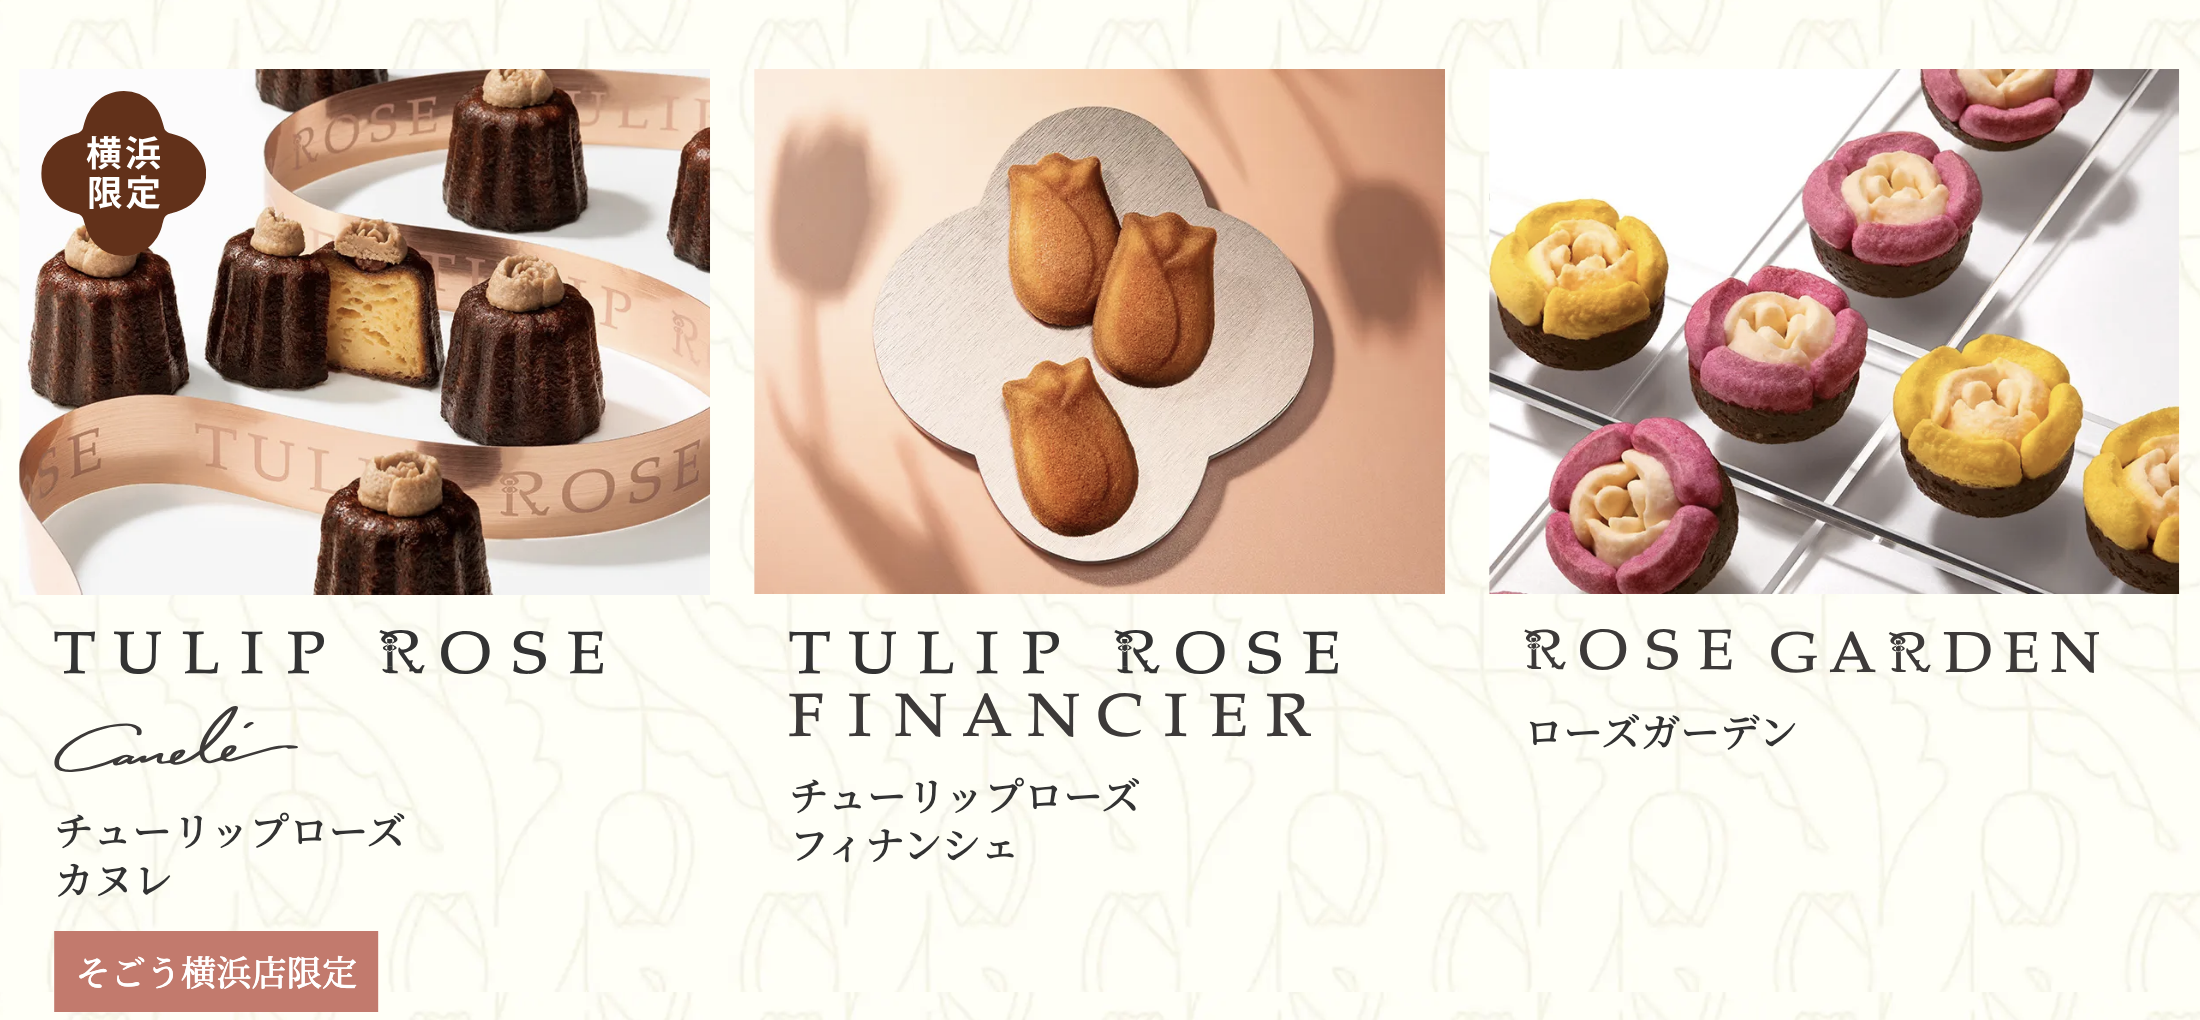 [日本伴手禮] Tokyo Tulip Rose 鬱金香玫瑰餅乾，少女系絕美的法式常溫點心，東京搶手排隊伴手禮 @莉芙小姐愛旅遊